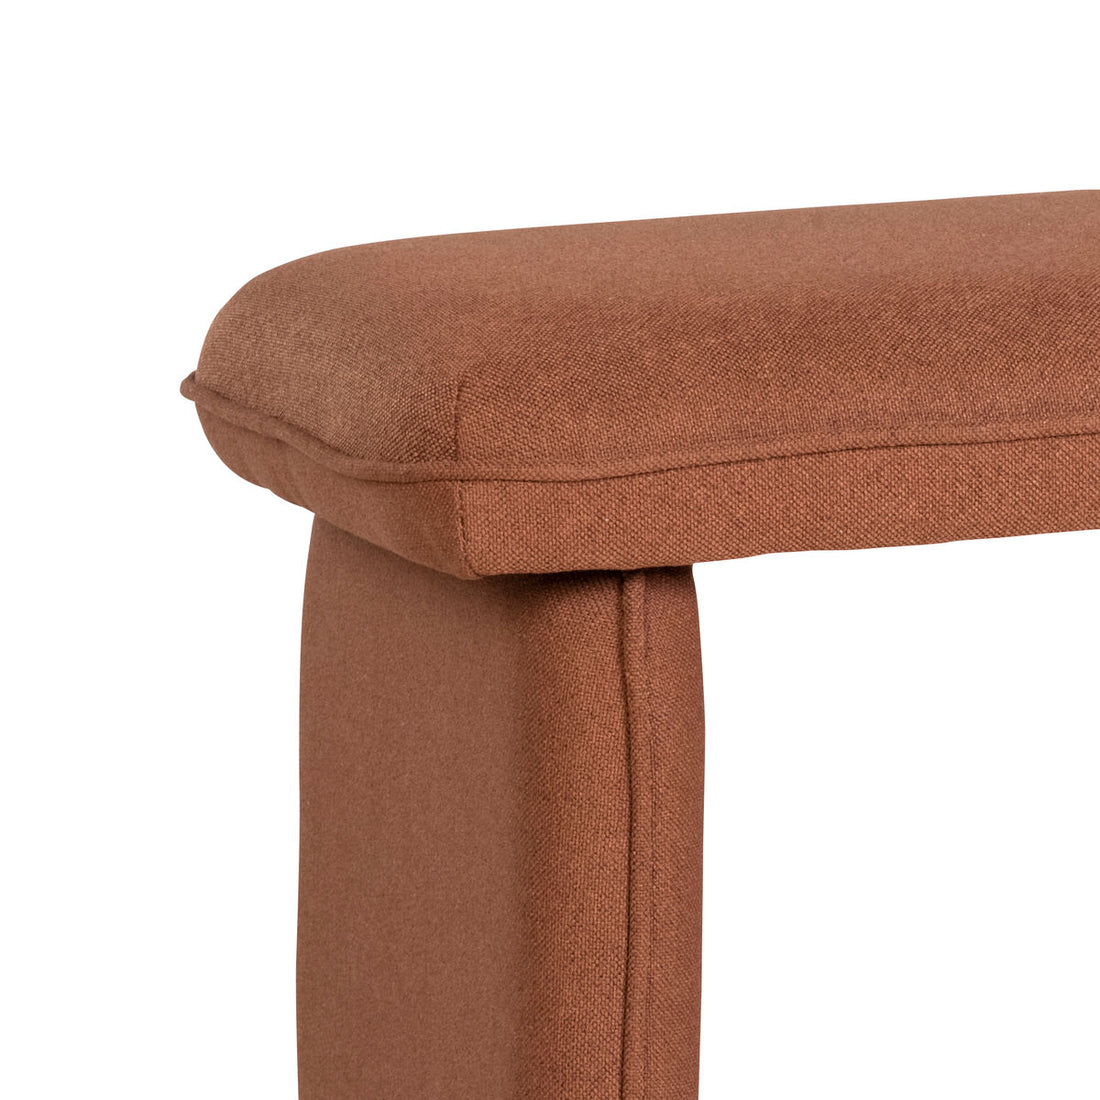 Hübsch Mellow bench reddish -brown